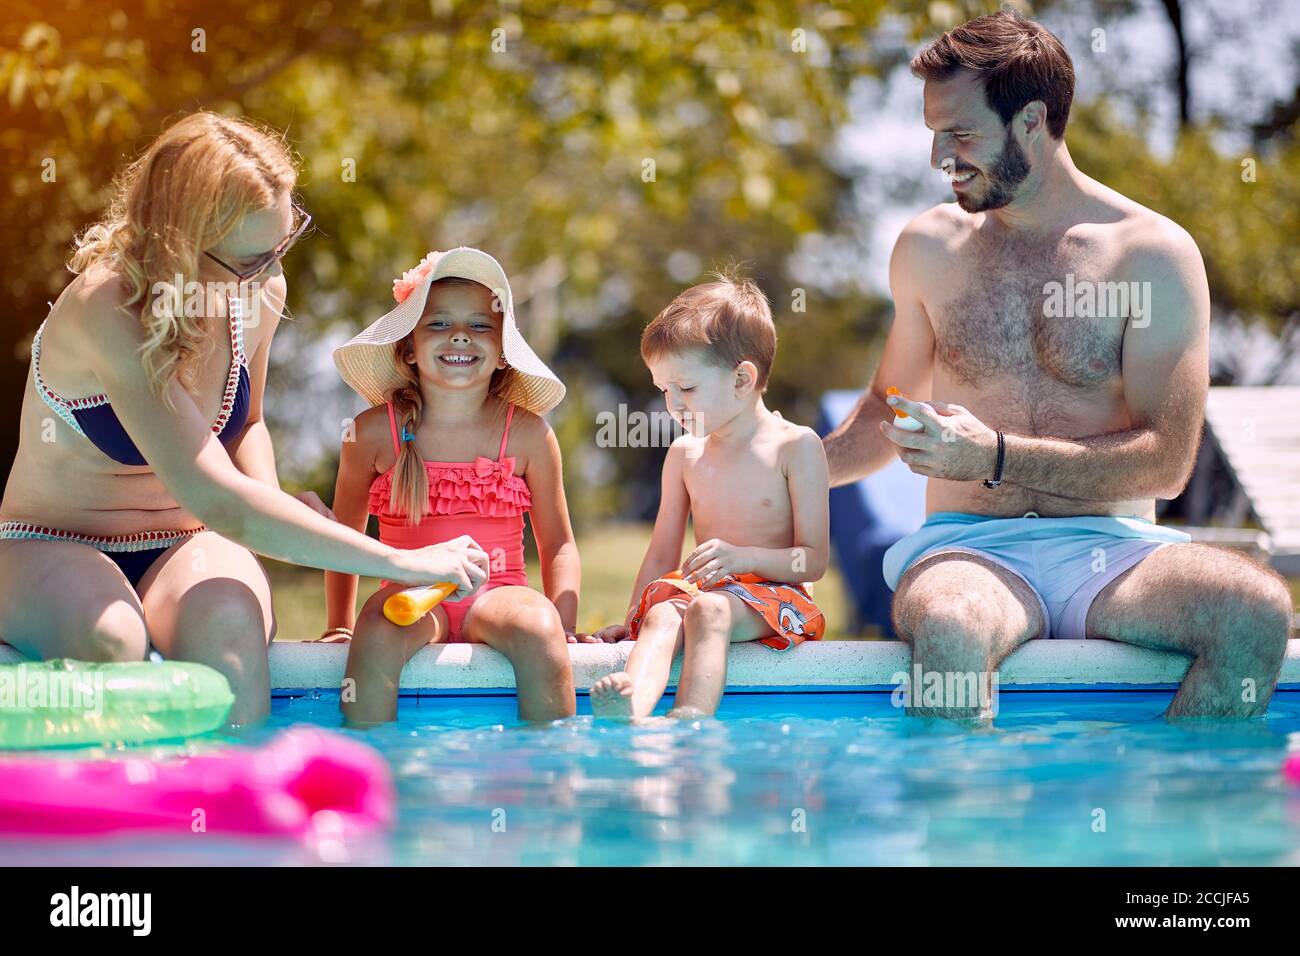 Protection solaire - la famille met crème solaire sur les petits enfants souriants avant de nager. Banque D'Images